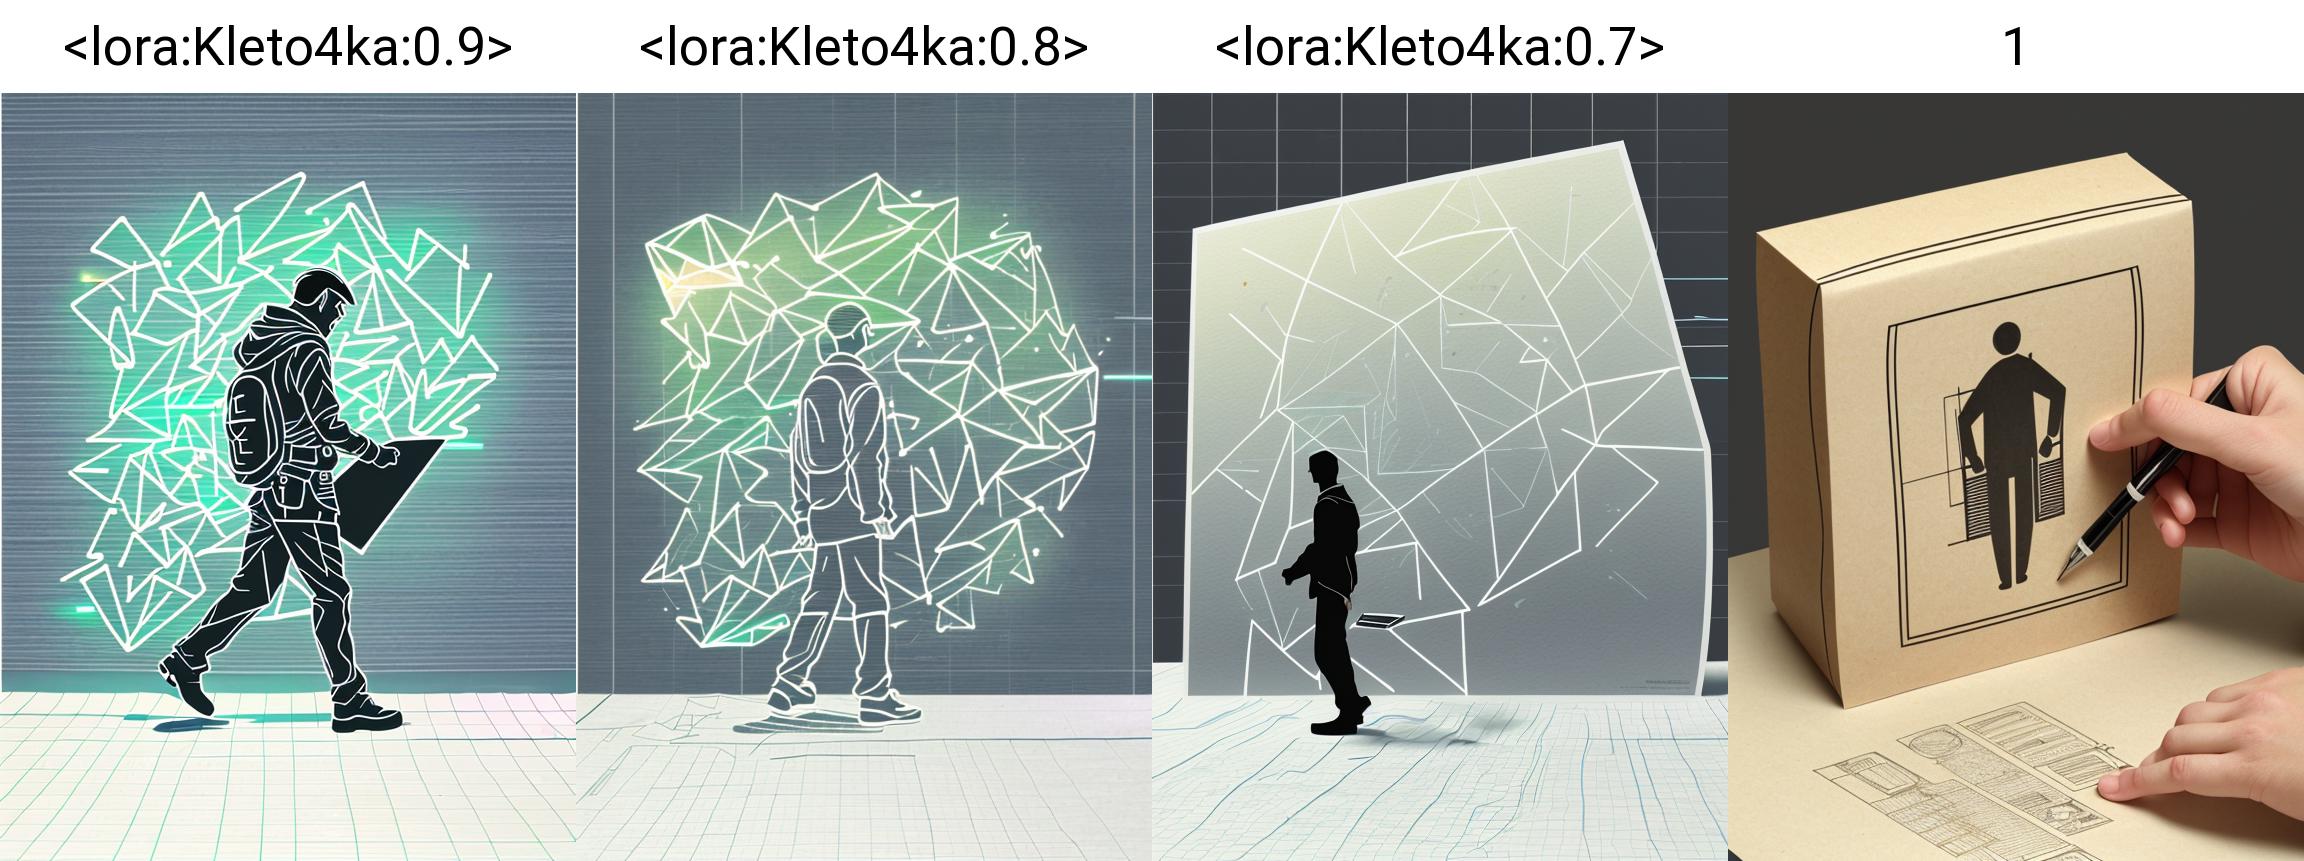 Kleto4ka / art checkered notebook image by Kotoshko